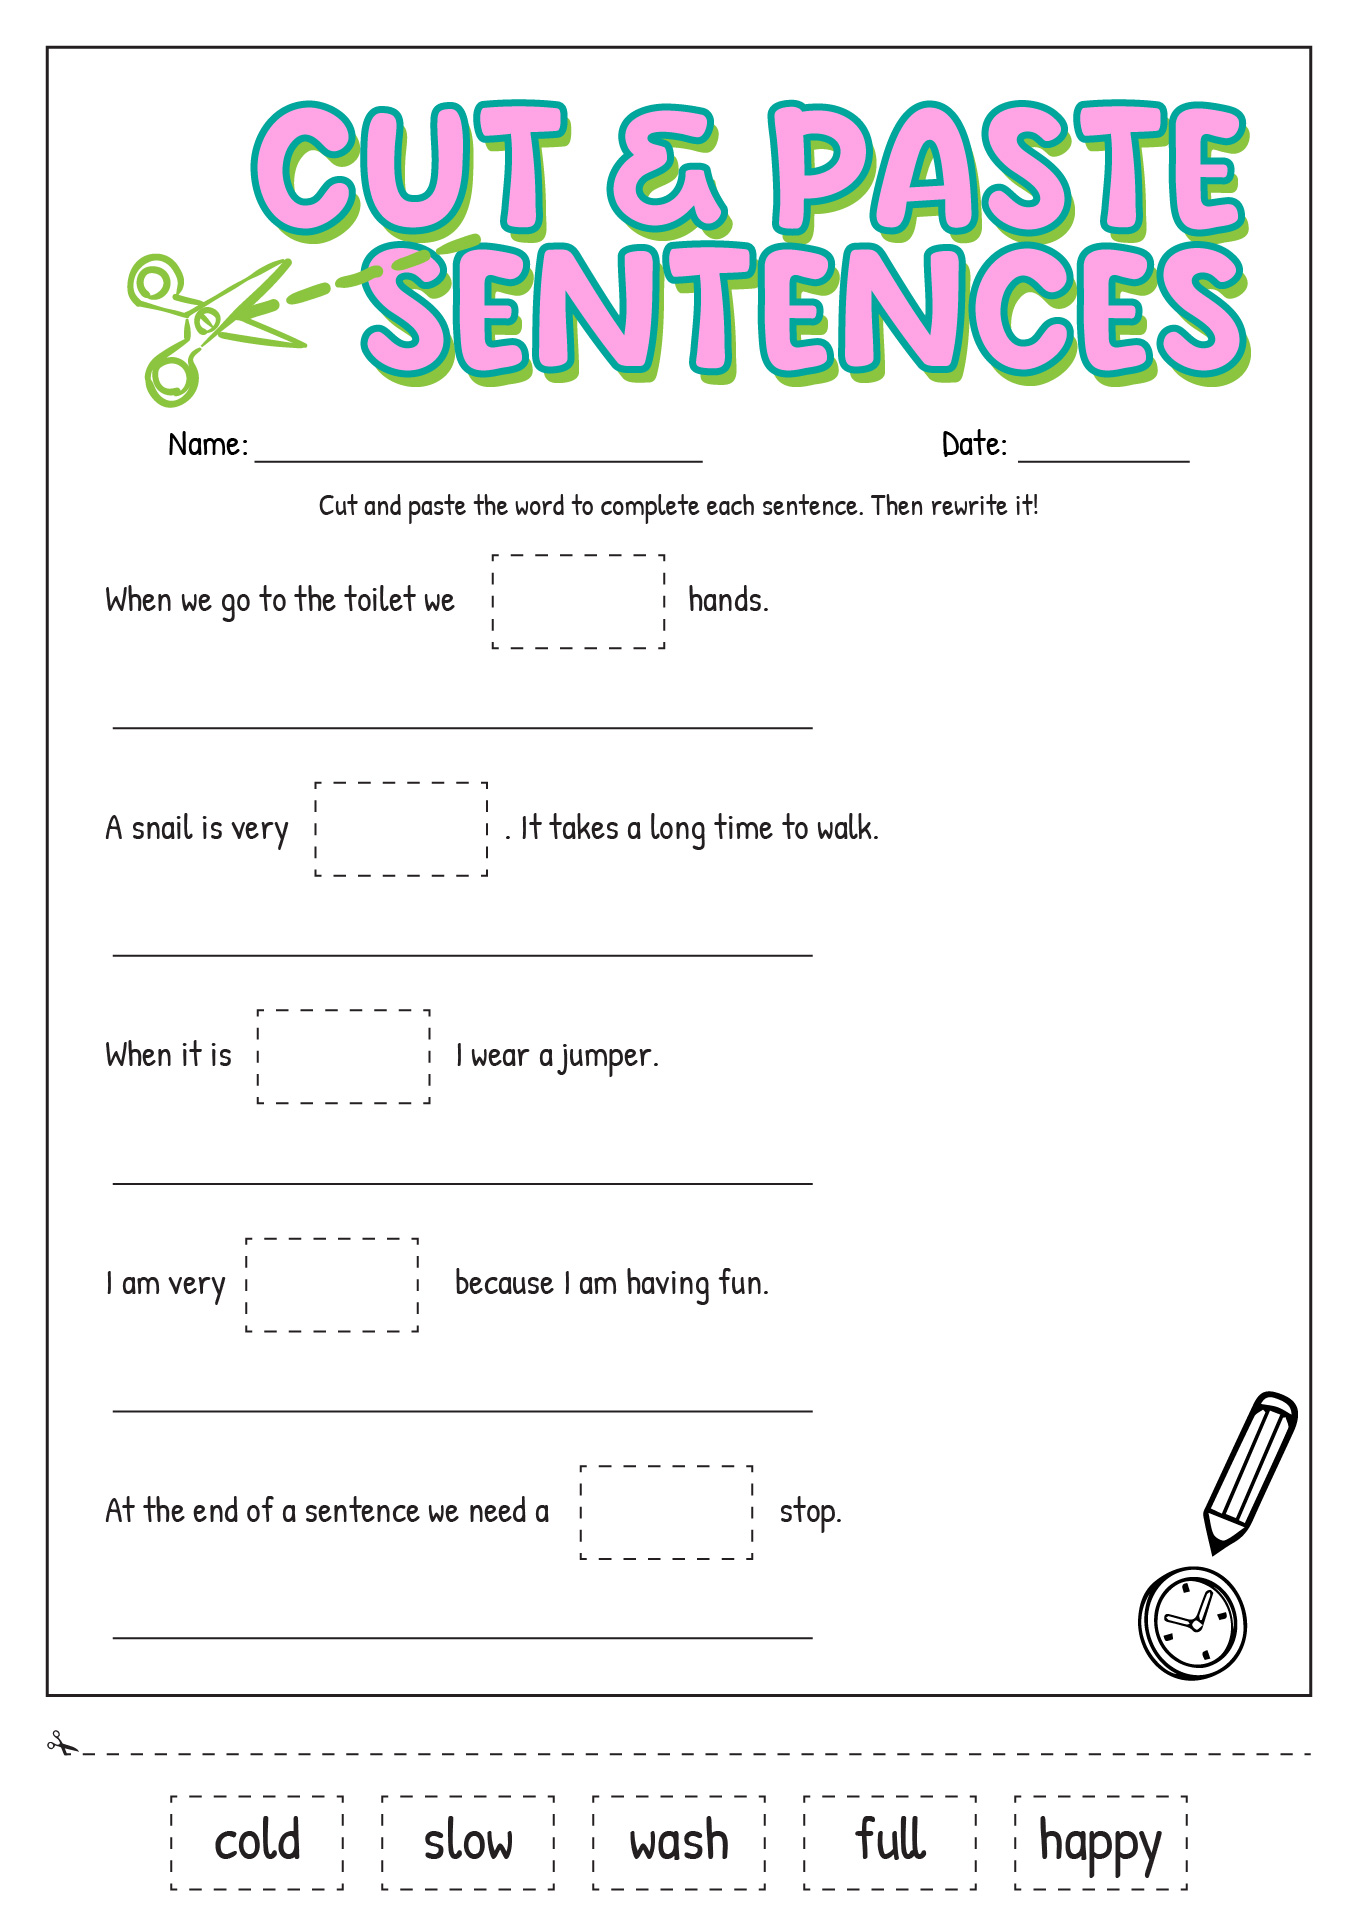 Cut and Paste Sentences Image